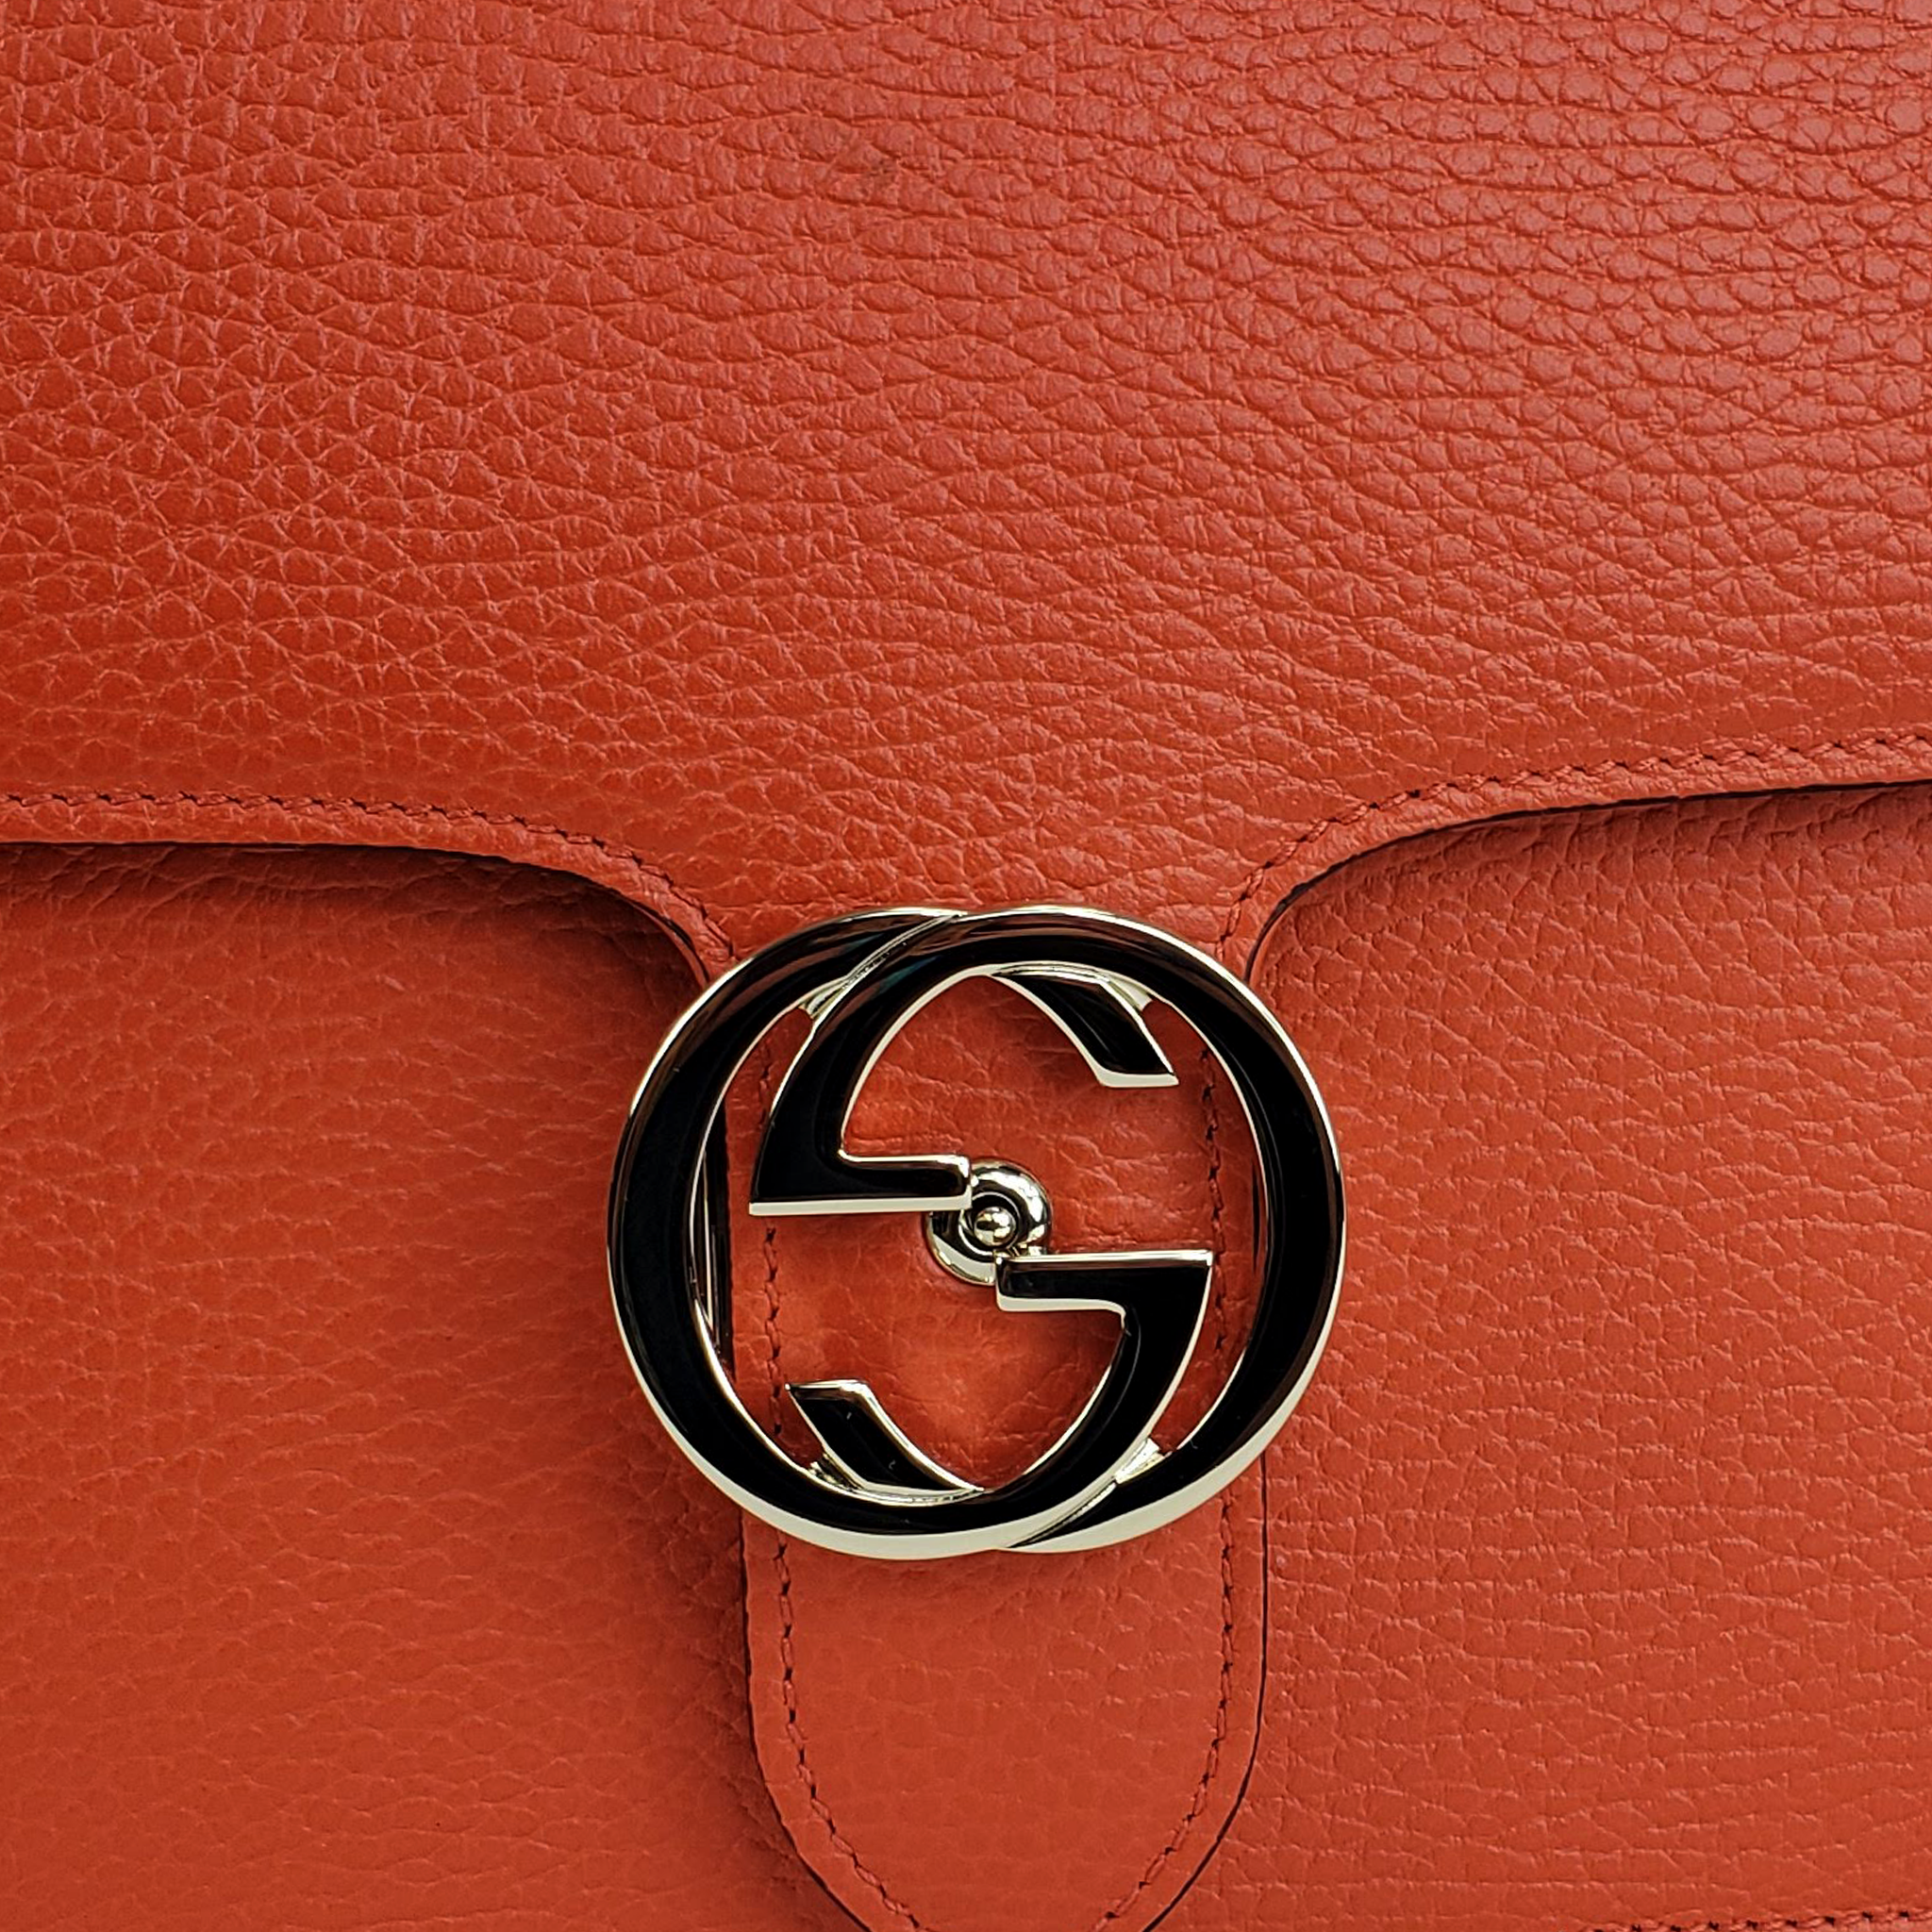 Gucci Medium Interlocking GG Crossbody Bag in Sun Orange –